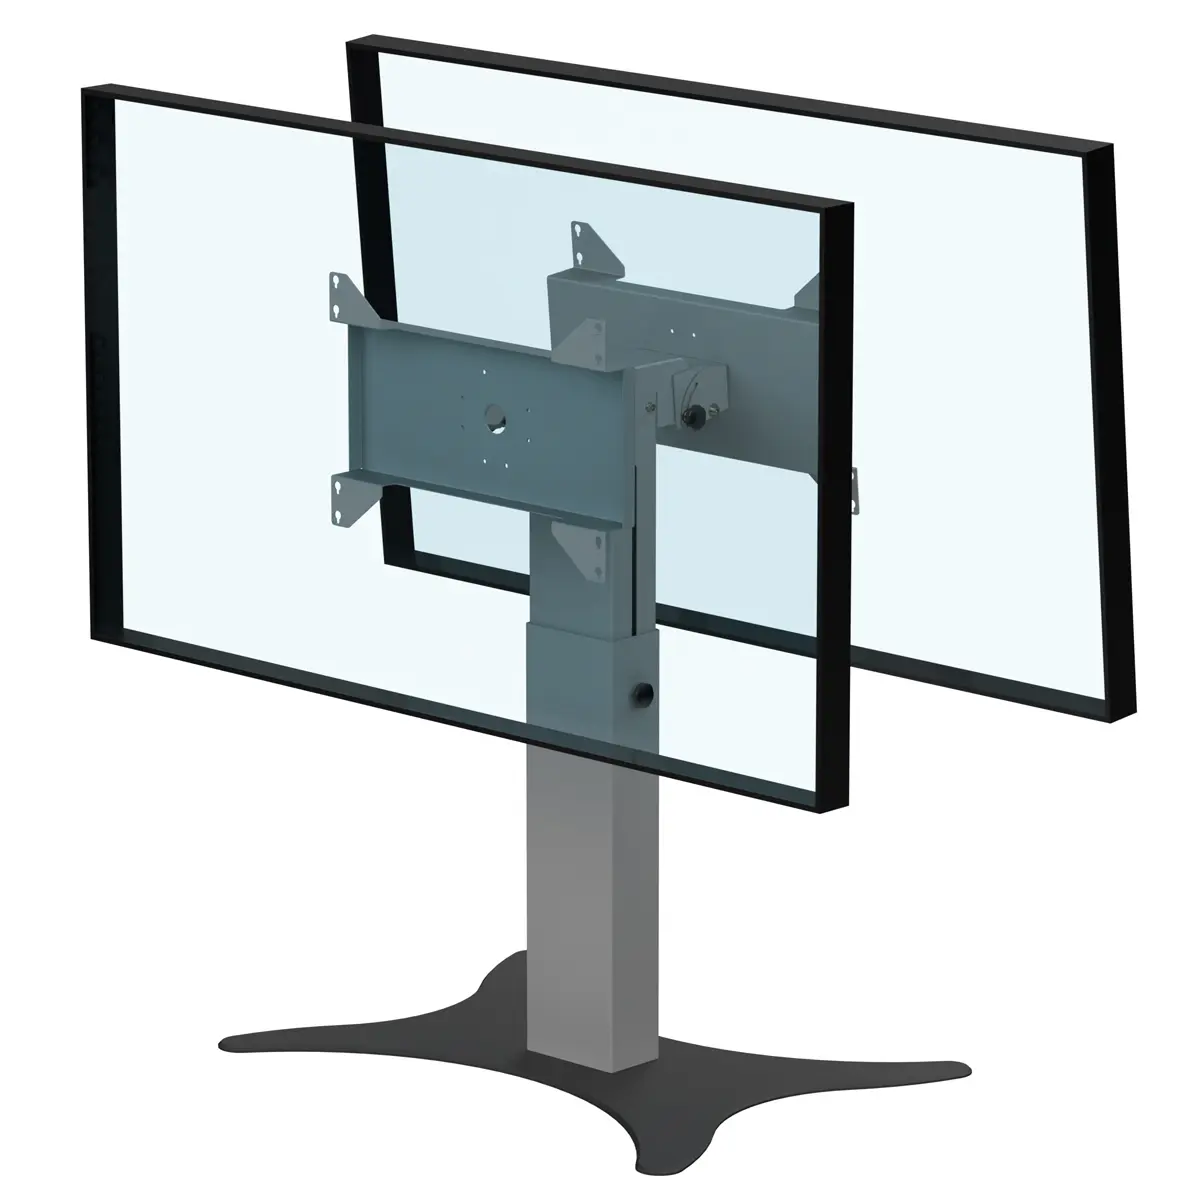 Support double écrans bas retour écran hauteur réglable 800-1100mm réglable en hauteur avec embase type B